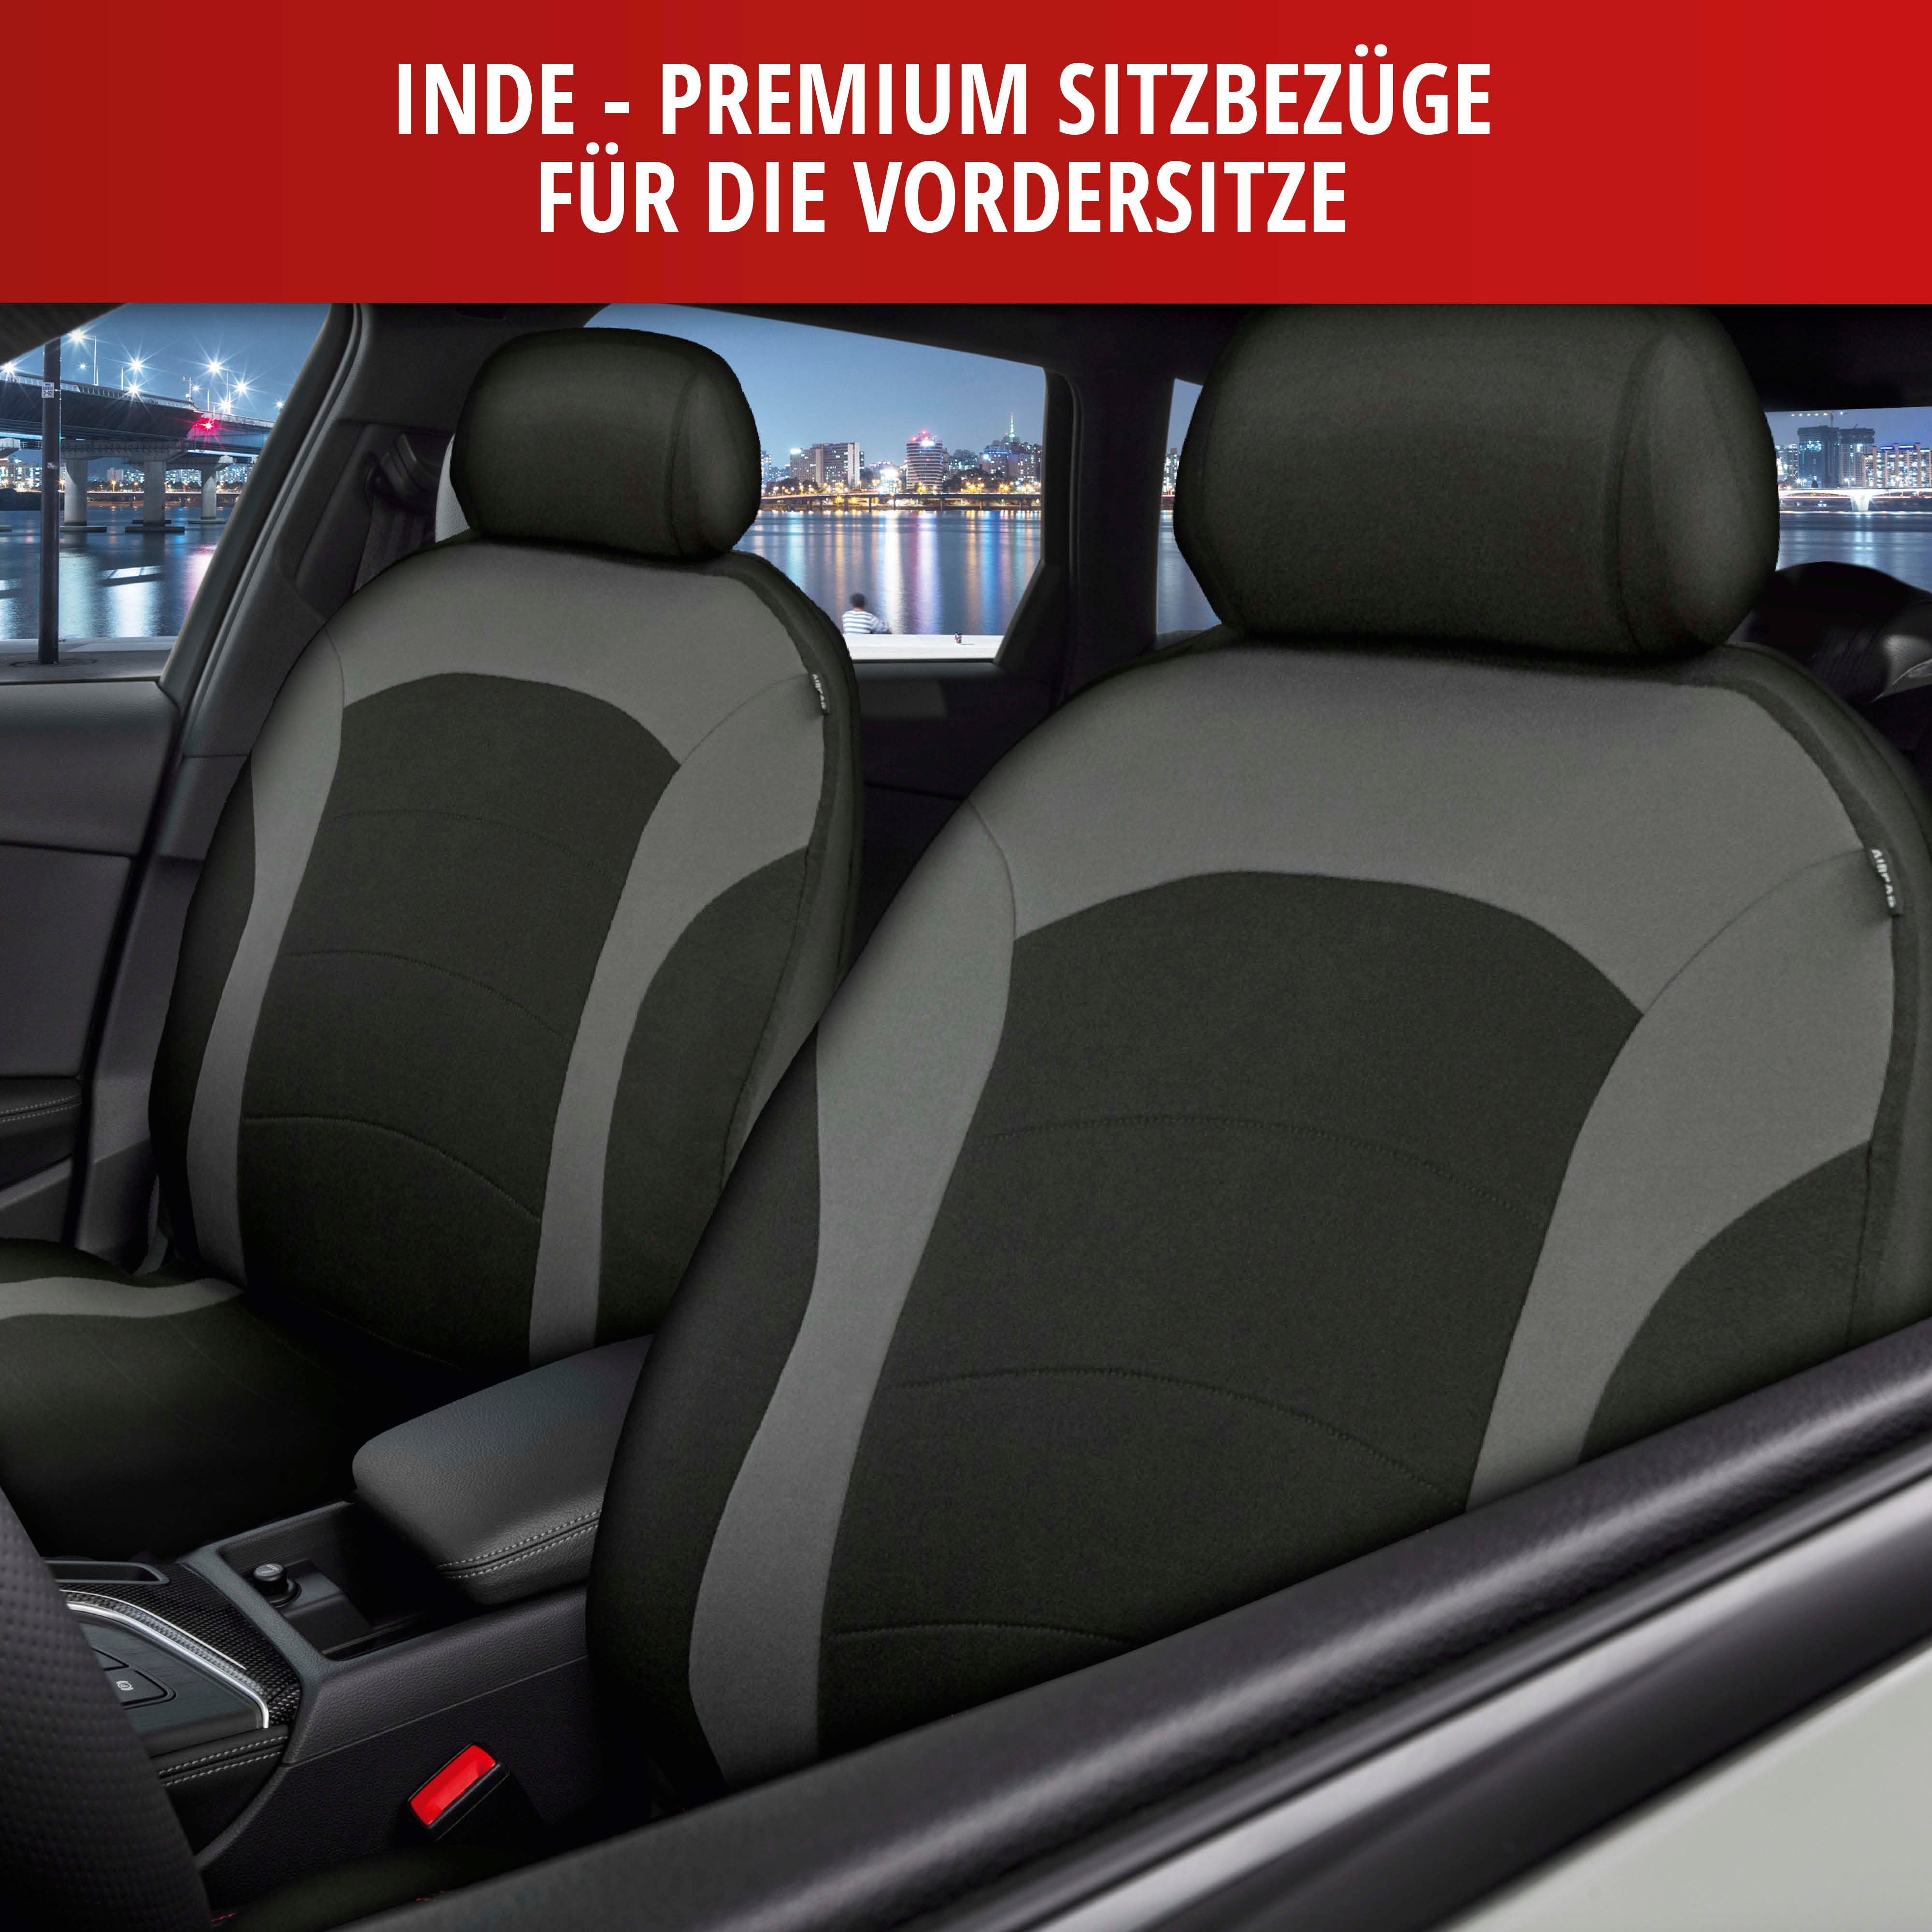 ZIPP IT Premium Inde Autositzbezüge für zwei Vordersitze mit Reissverschluss System